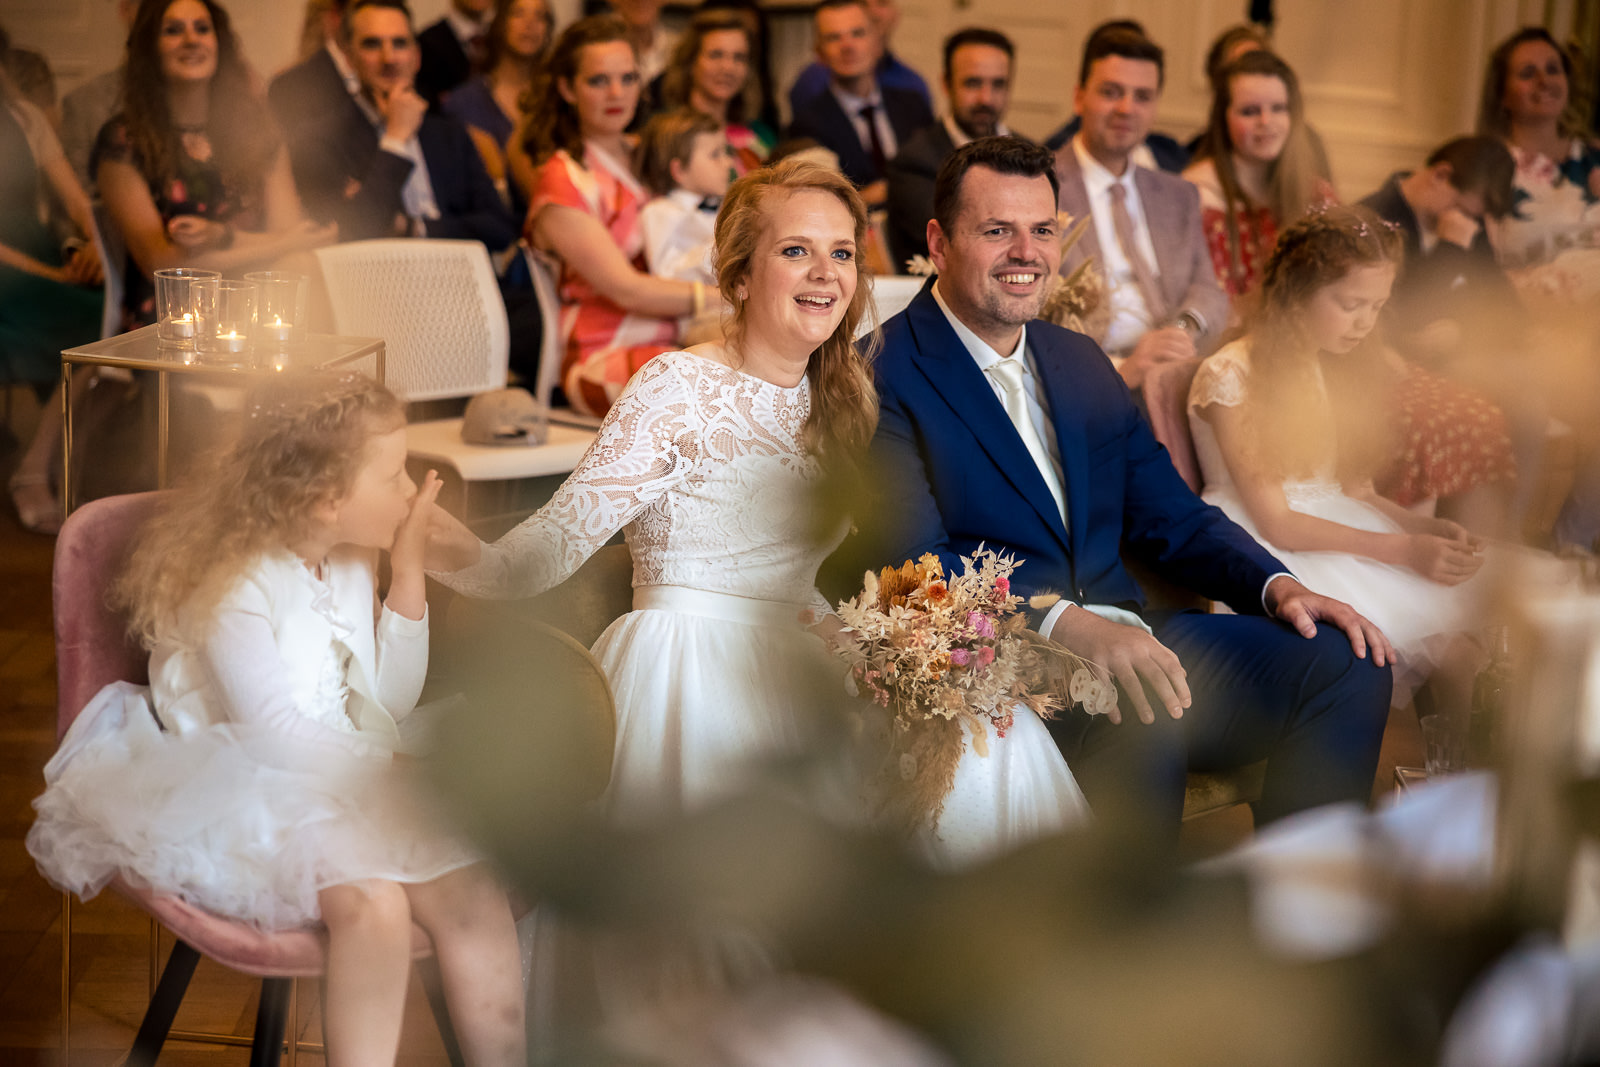 bruidsmeisje kust bruid tijdens trouwceremonie Spaansche Hof Den Haag